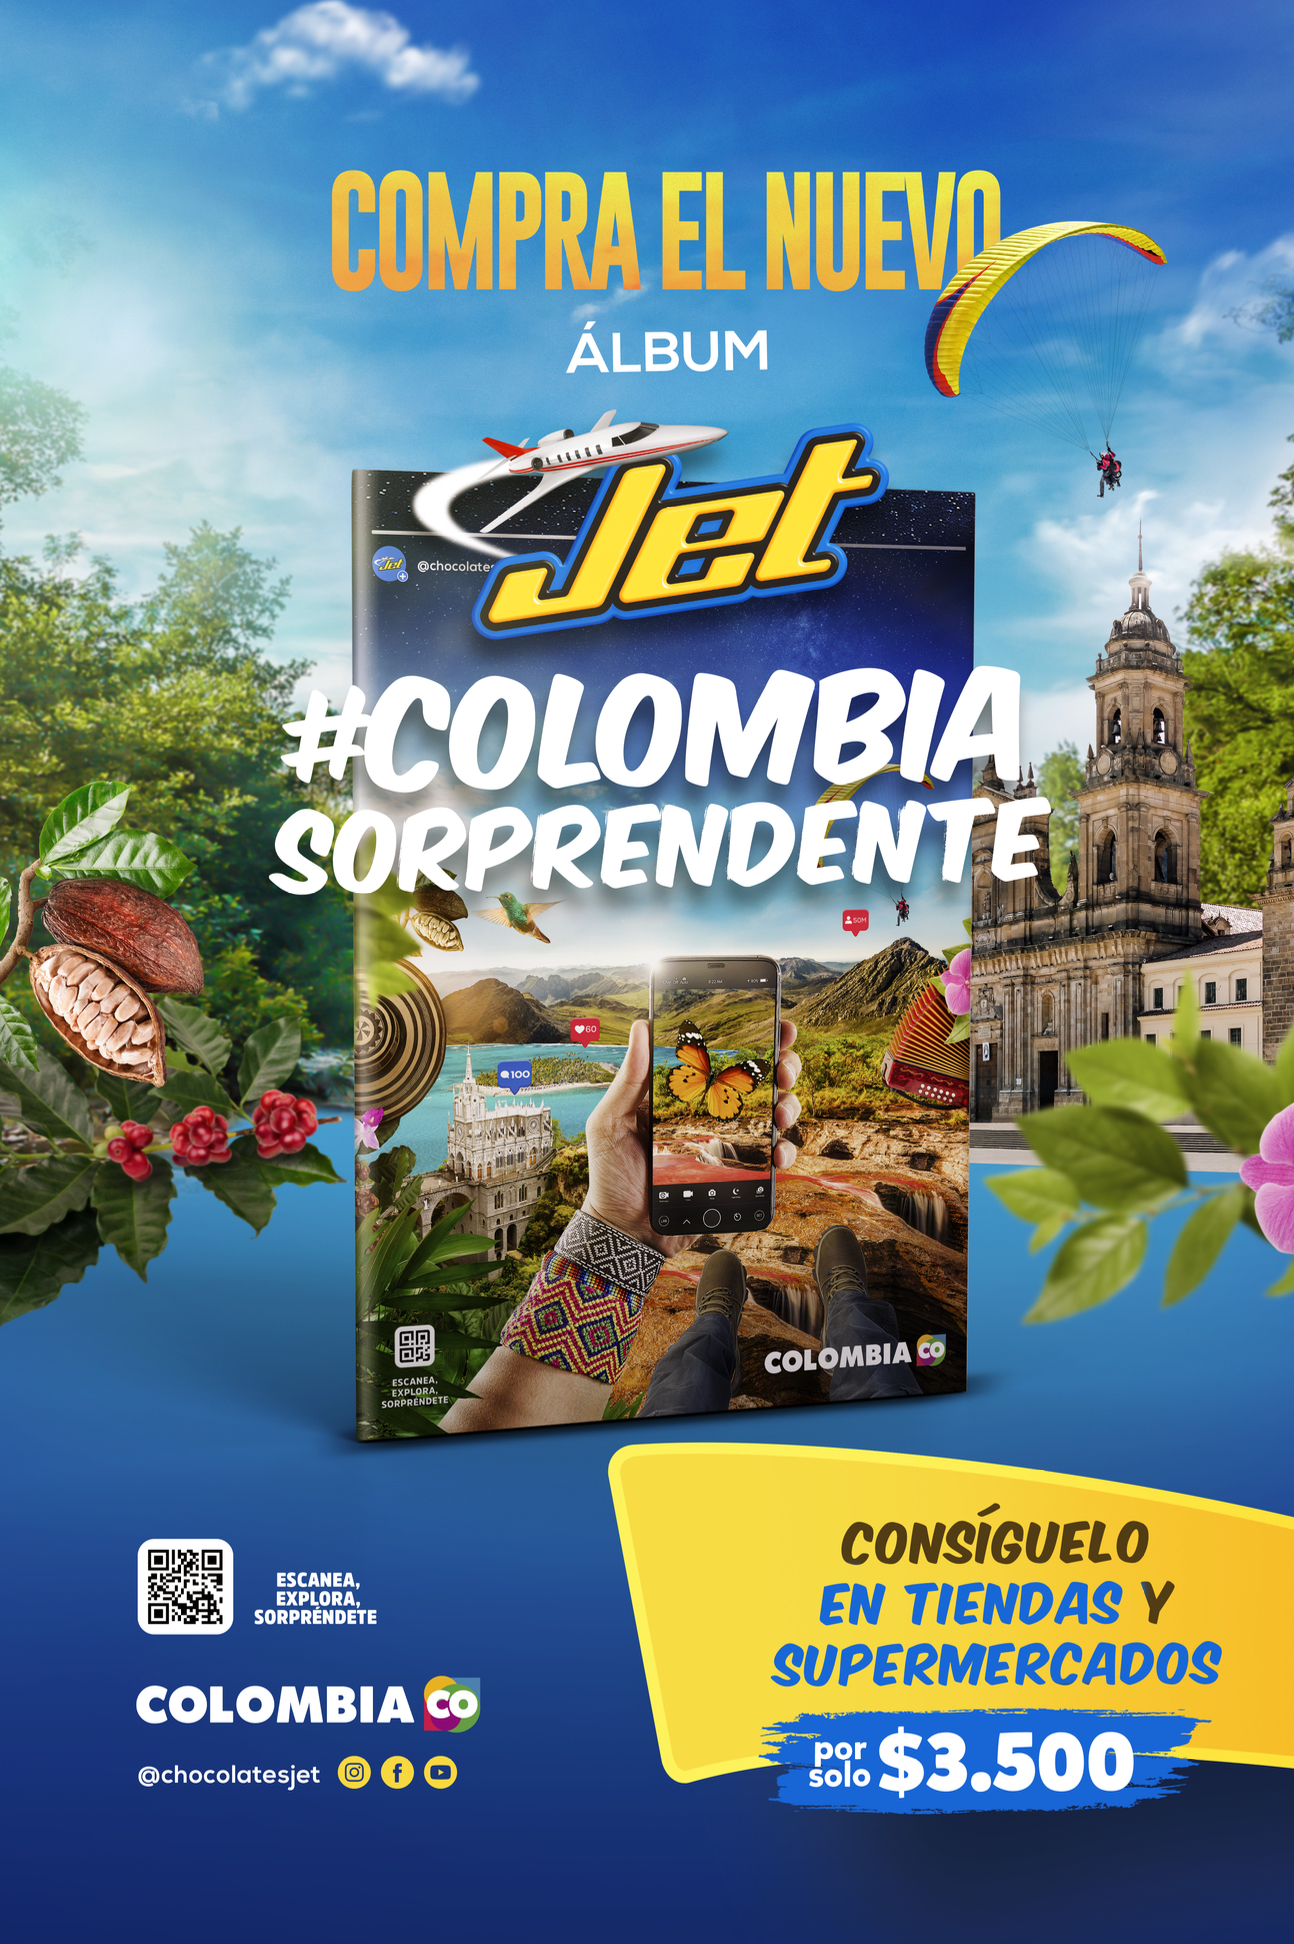 De álbum icónico en Colombia a contenido amado por Centennials